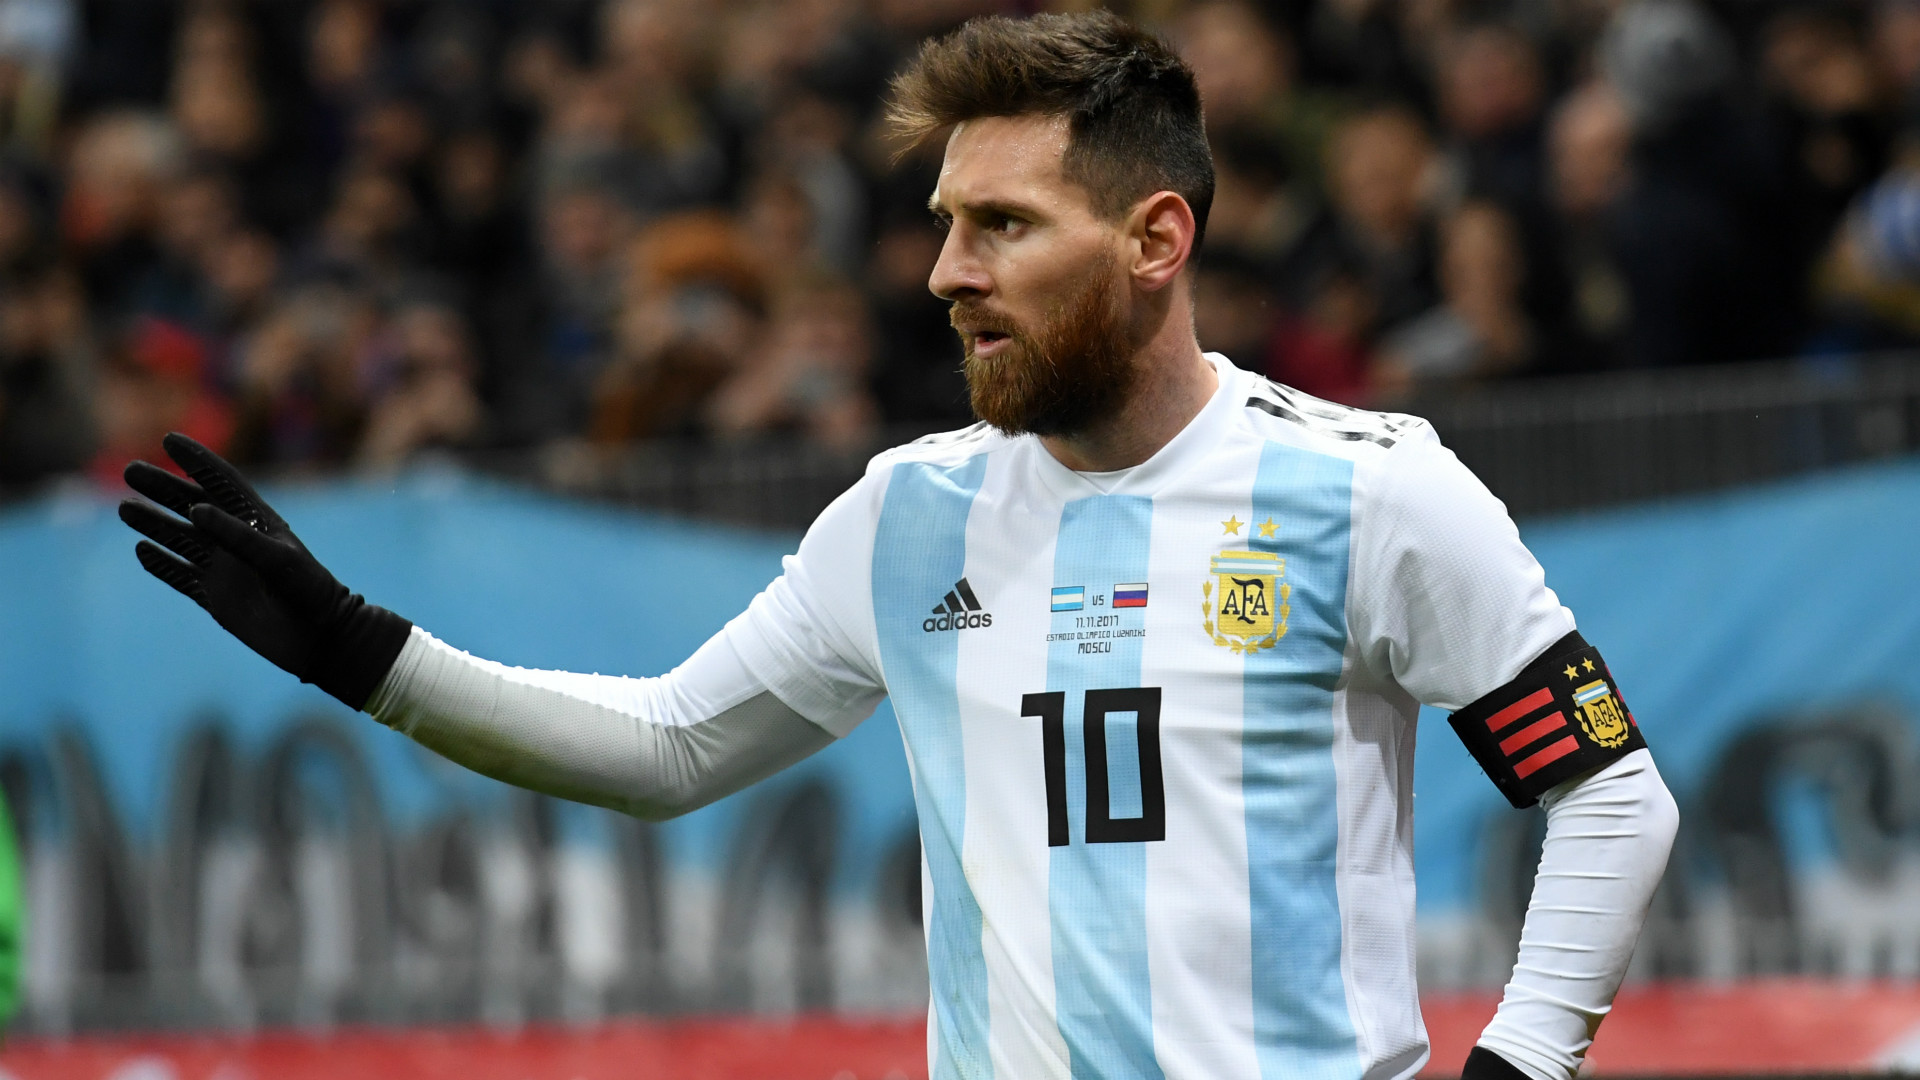 Đến World Cup 2018, Messi mang theo “món nợ” cup vàng 4 năm trước